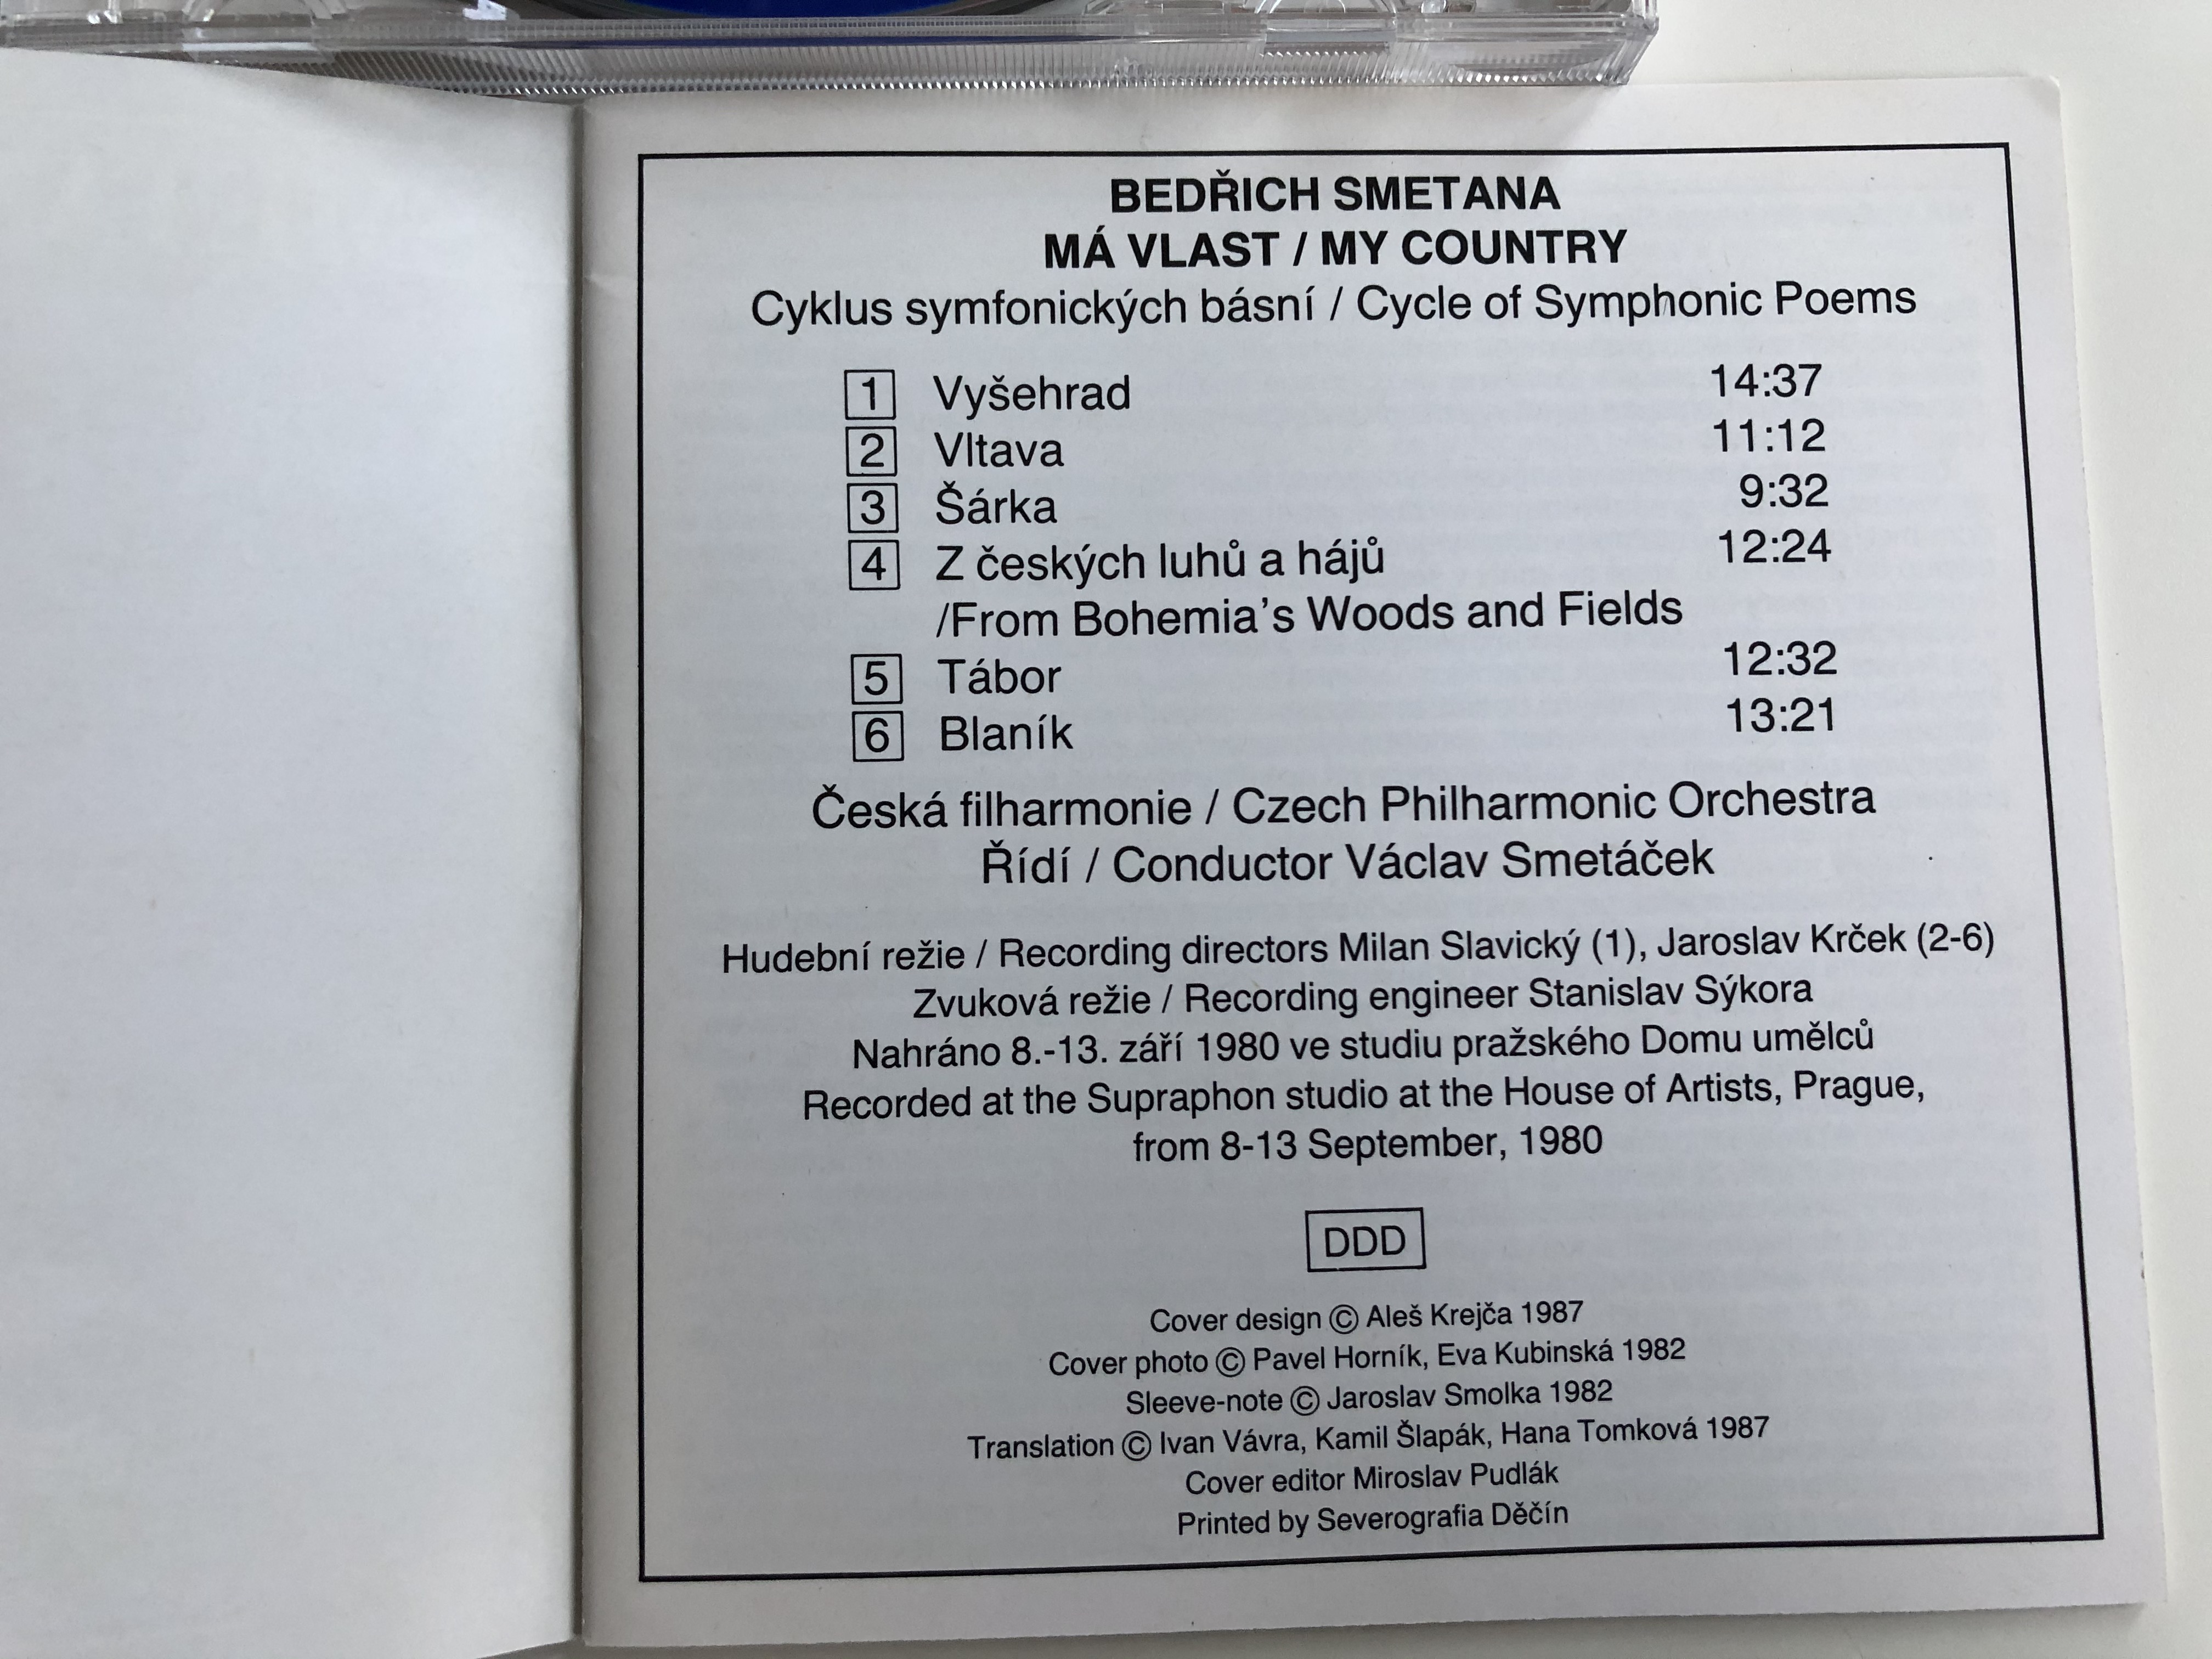 smetana-m-vlast-my-country-czech-philharmonic-orchestra-v-clav-smet-ek-supraphon-audio-cd-1989-stereo-11-0082-2-031-3-.jpg